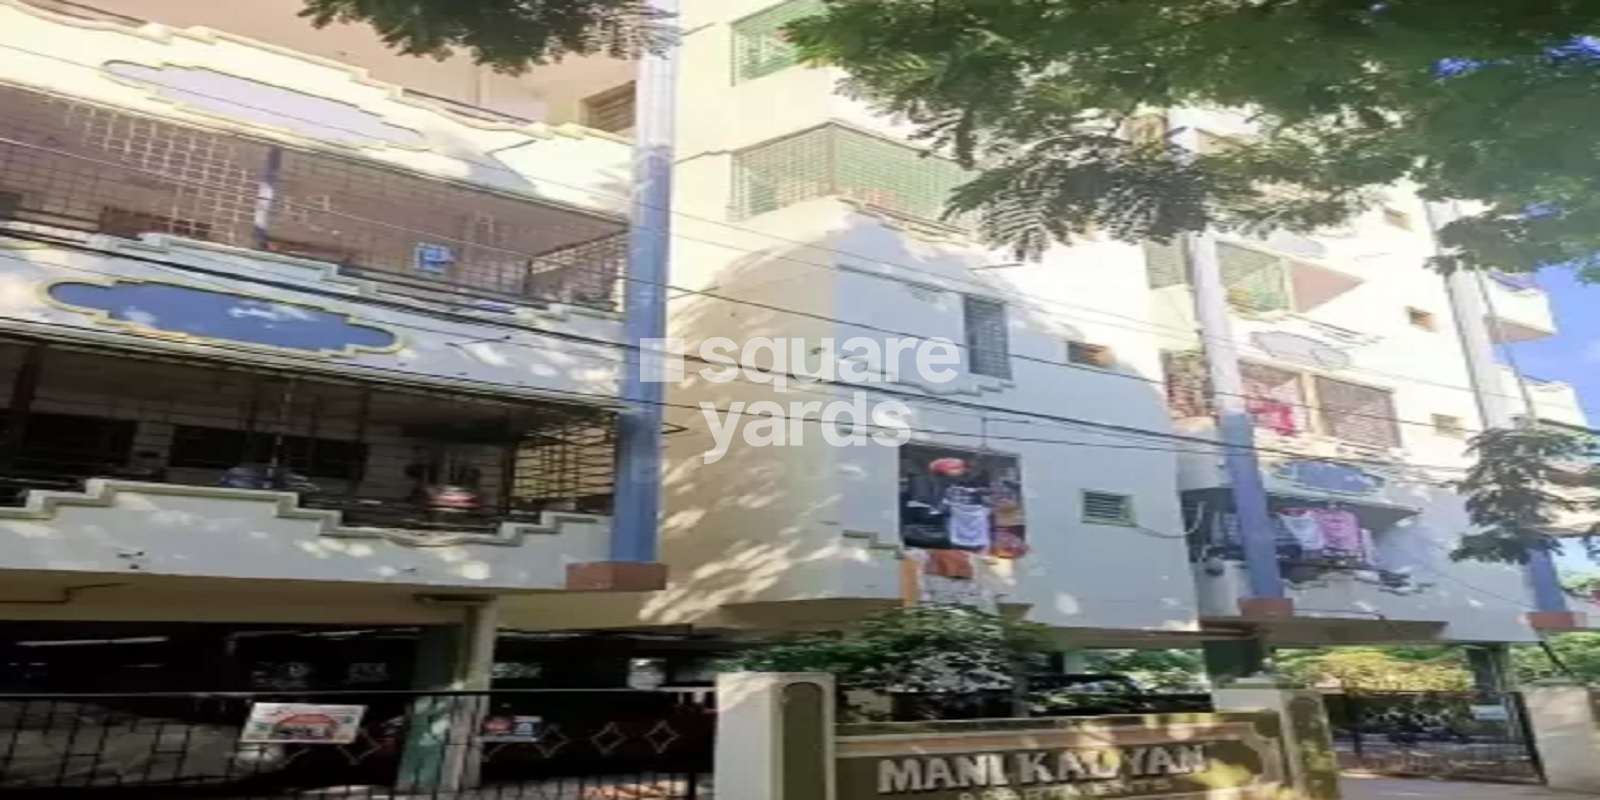 Mani Kalyan Apartment Cover Image